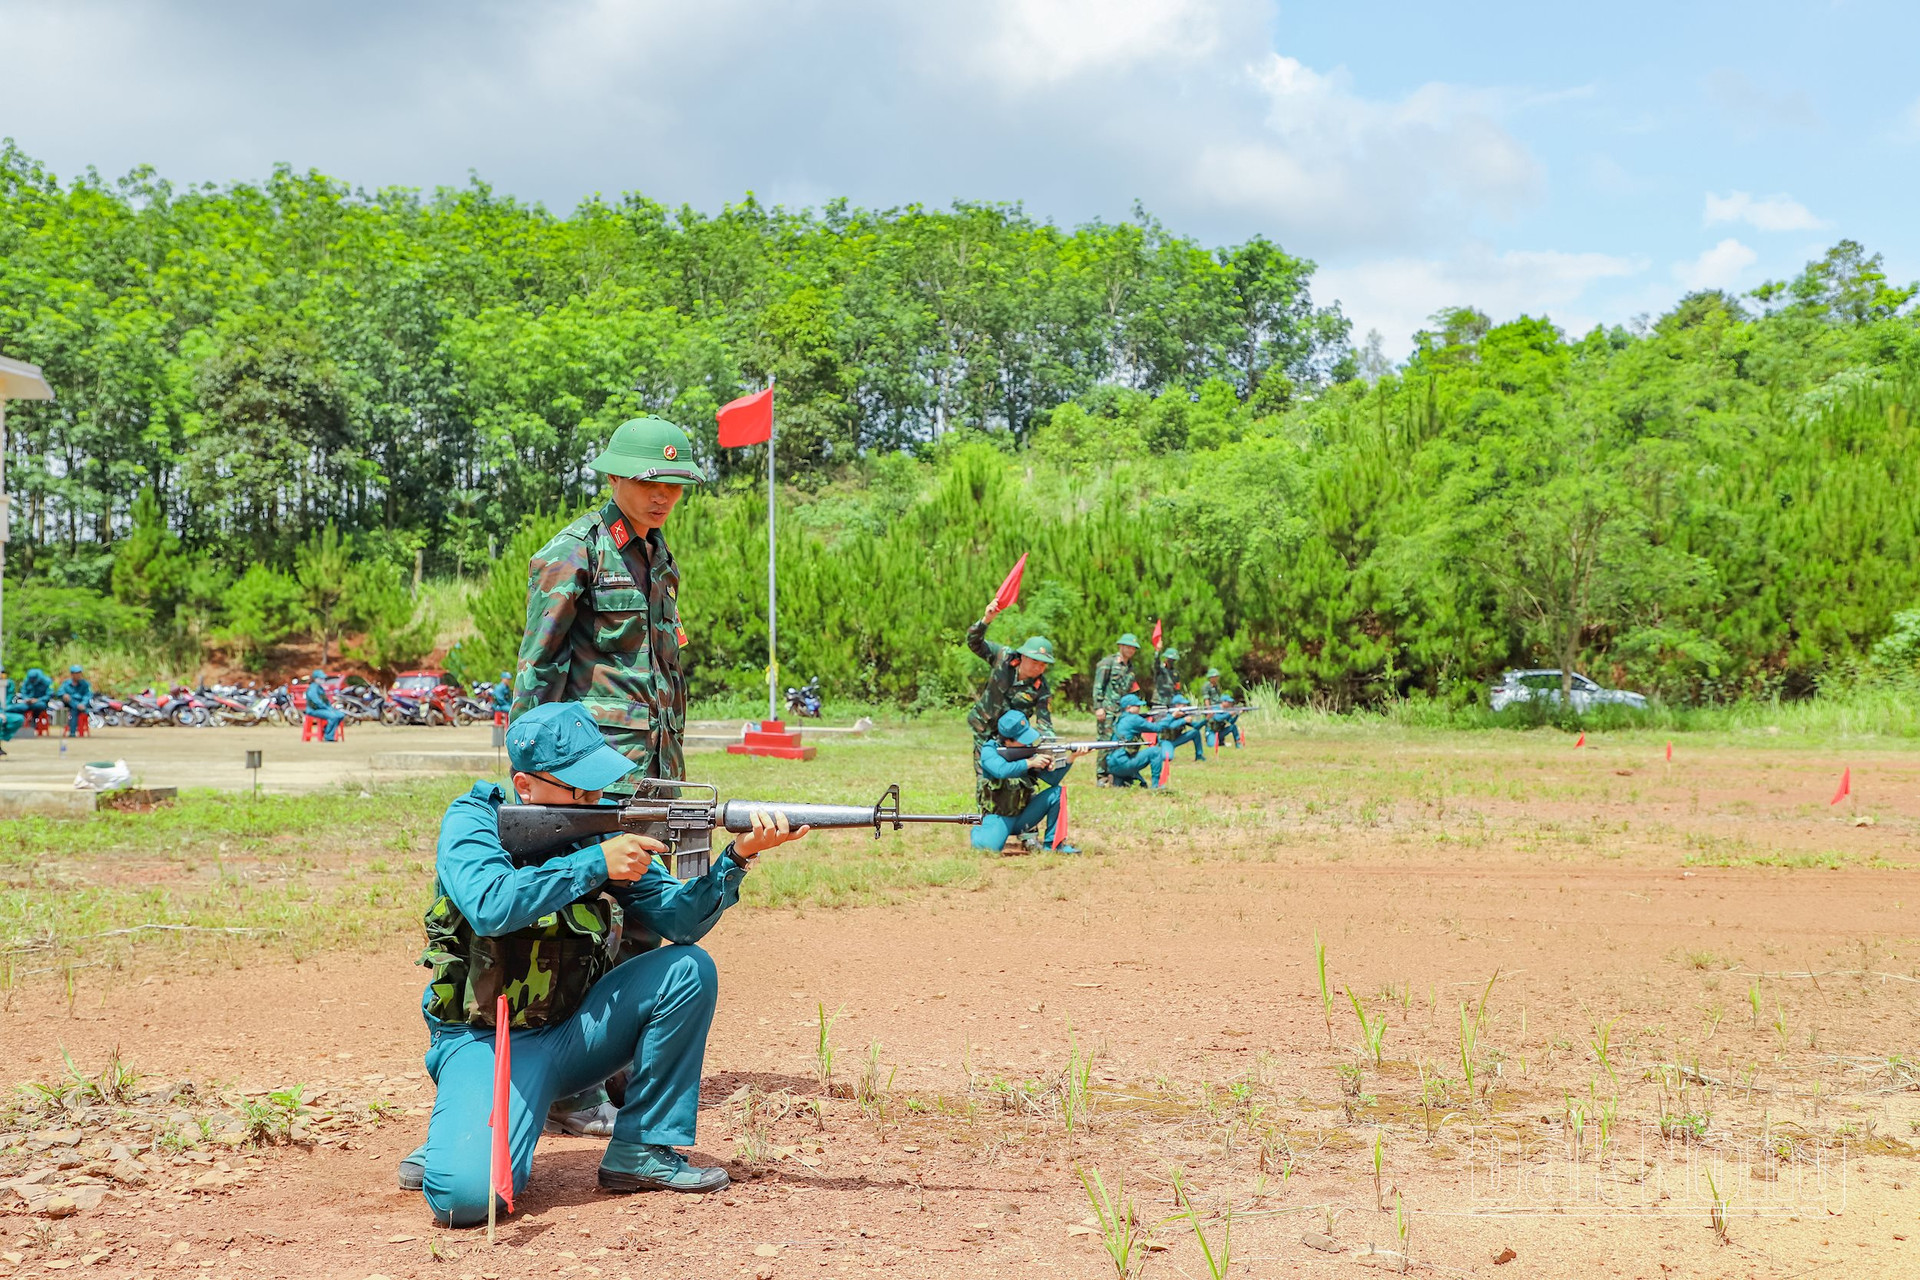 Lực lượng tự vệ khối các cơ quan tỉnh Đắk Nông kiểm tra động tác quỳ bắn đạn thật súng AR-15 bài 1 (Ảnh: Nguyễn Nam)